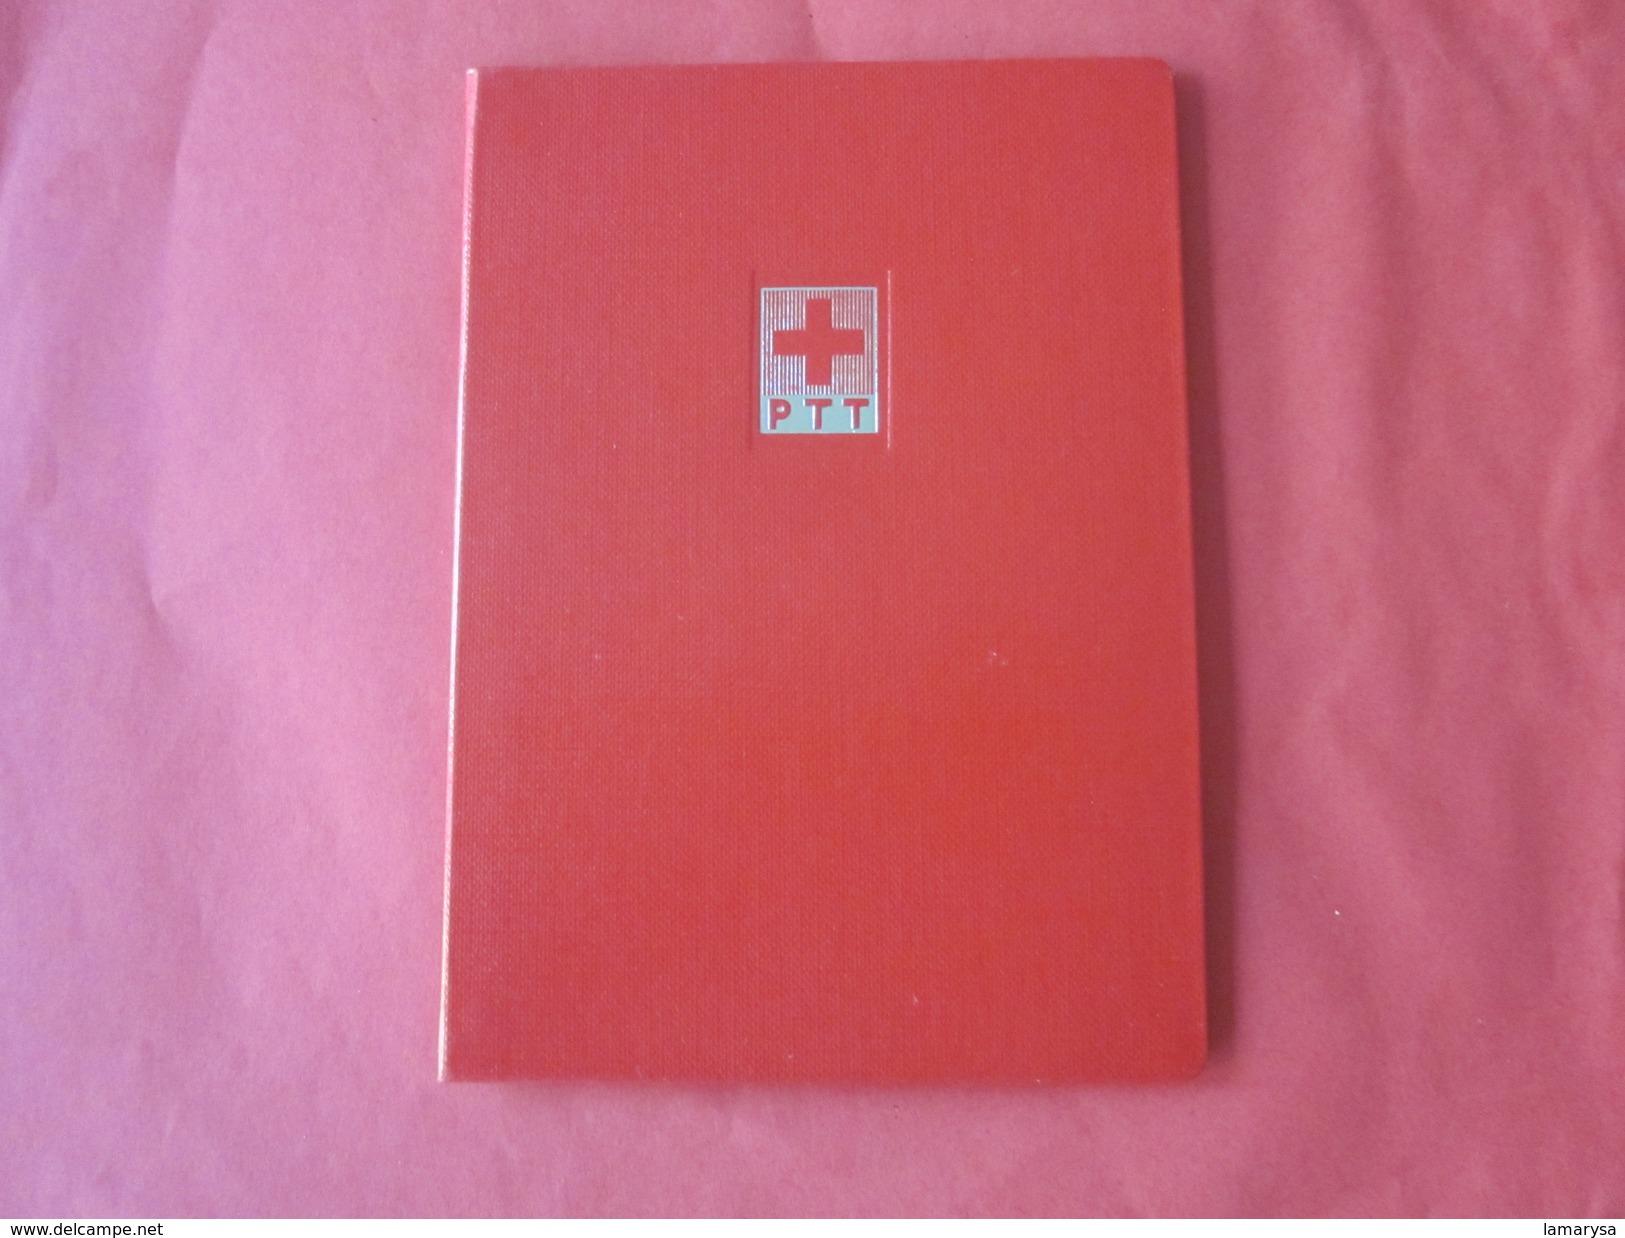 Helvetia Suisse Croix Rouge Matériel,Album Rouge à Bande Pour Timbres Postes Petit Format,fond Blanc Port Postal Offert - Small Format, White Pages